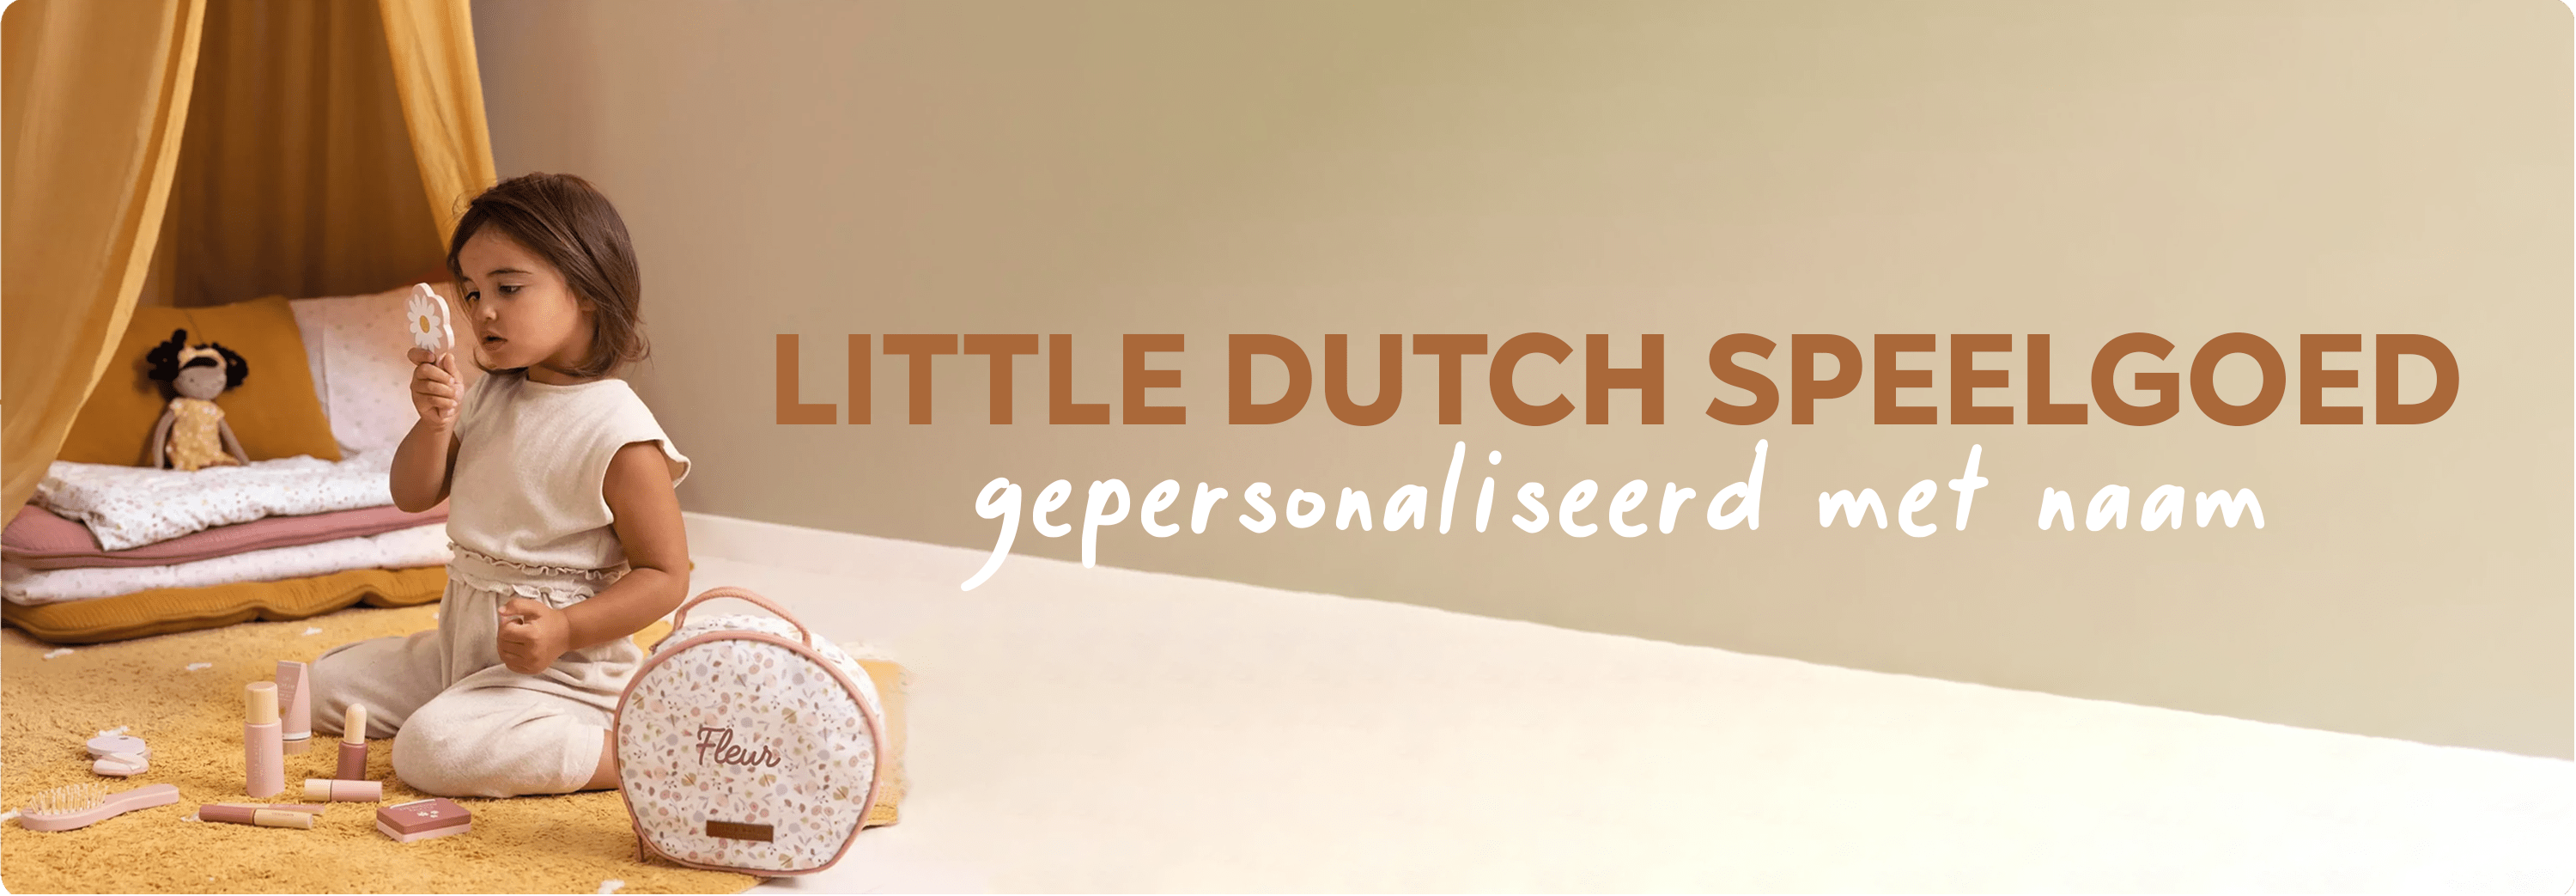 Little Dutch speelgoed gepersonaliseerd met naam banner test